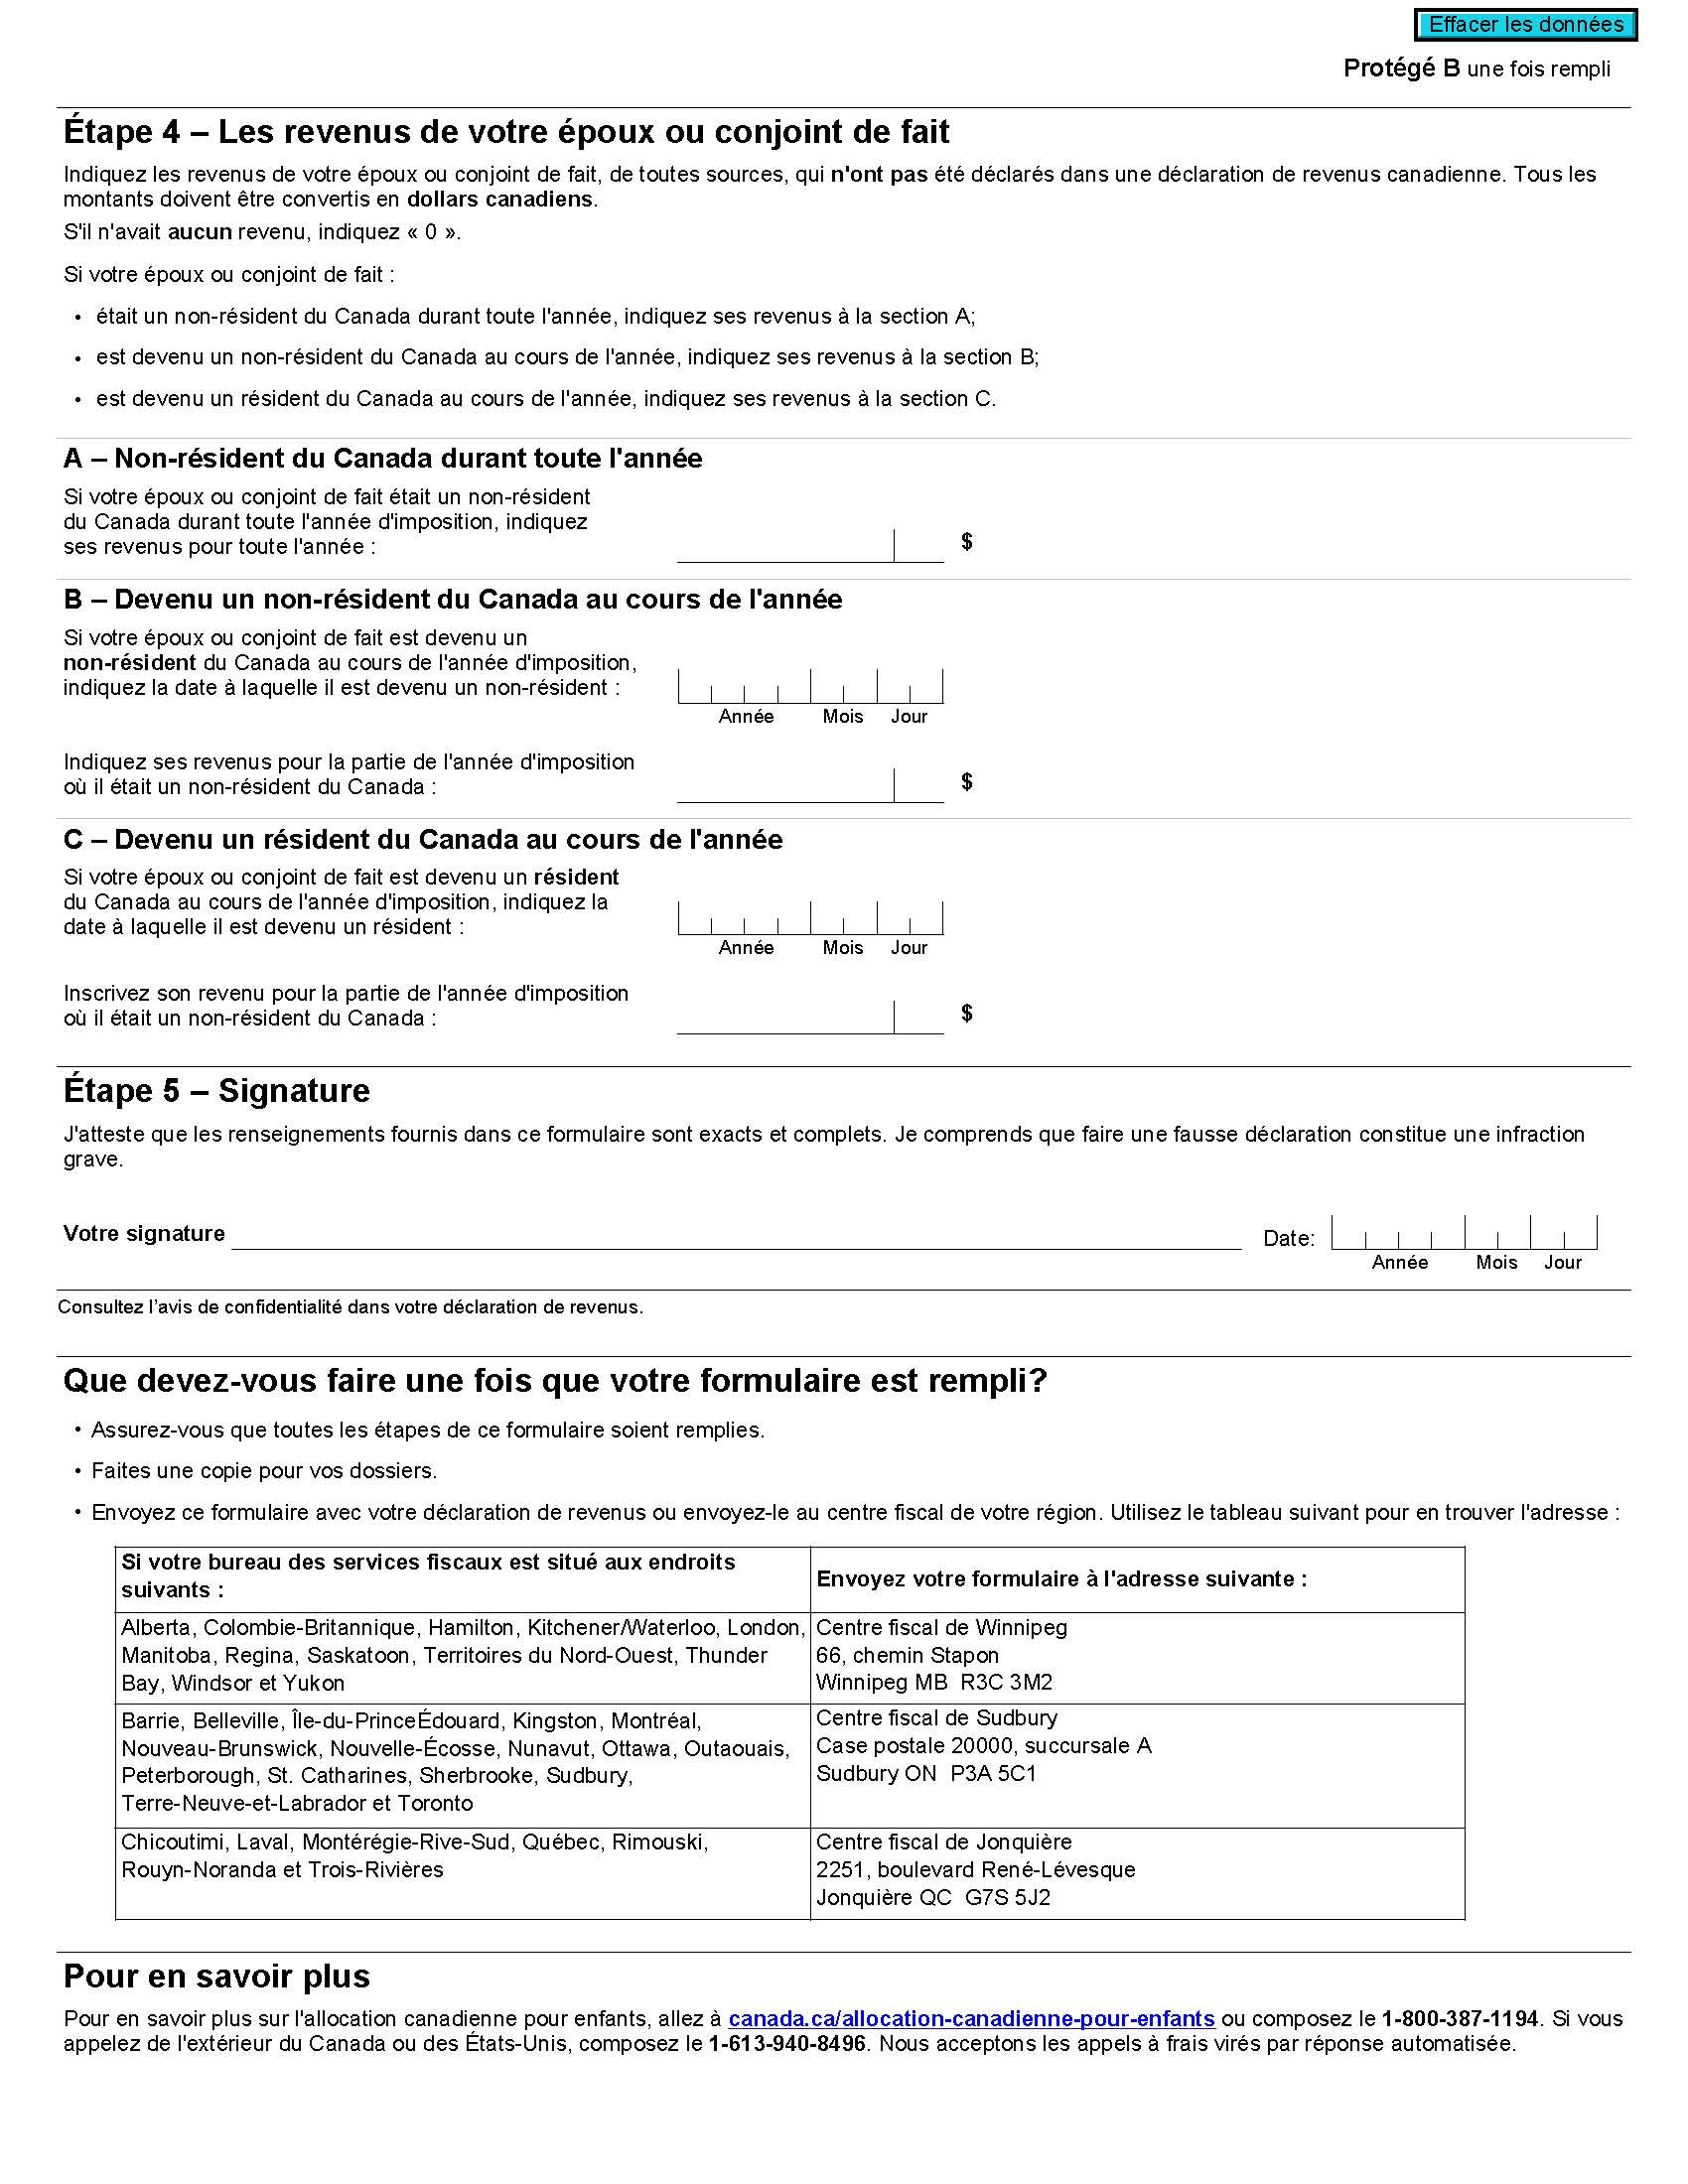 page 2 du Formulaire Revenu de l’époux ou du conjoint de fait non résident (formulaire CTB9)